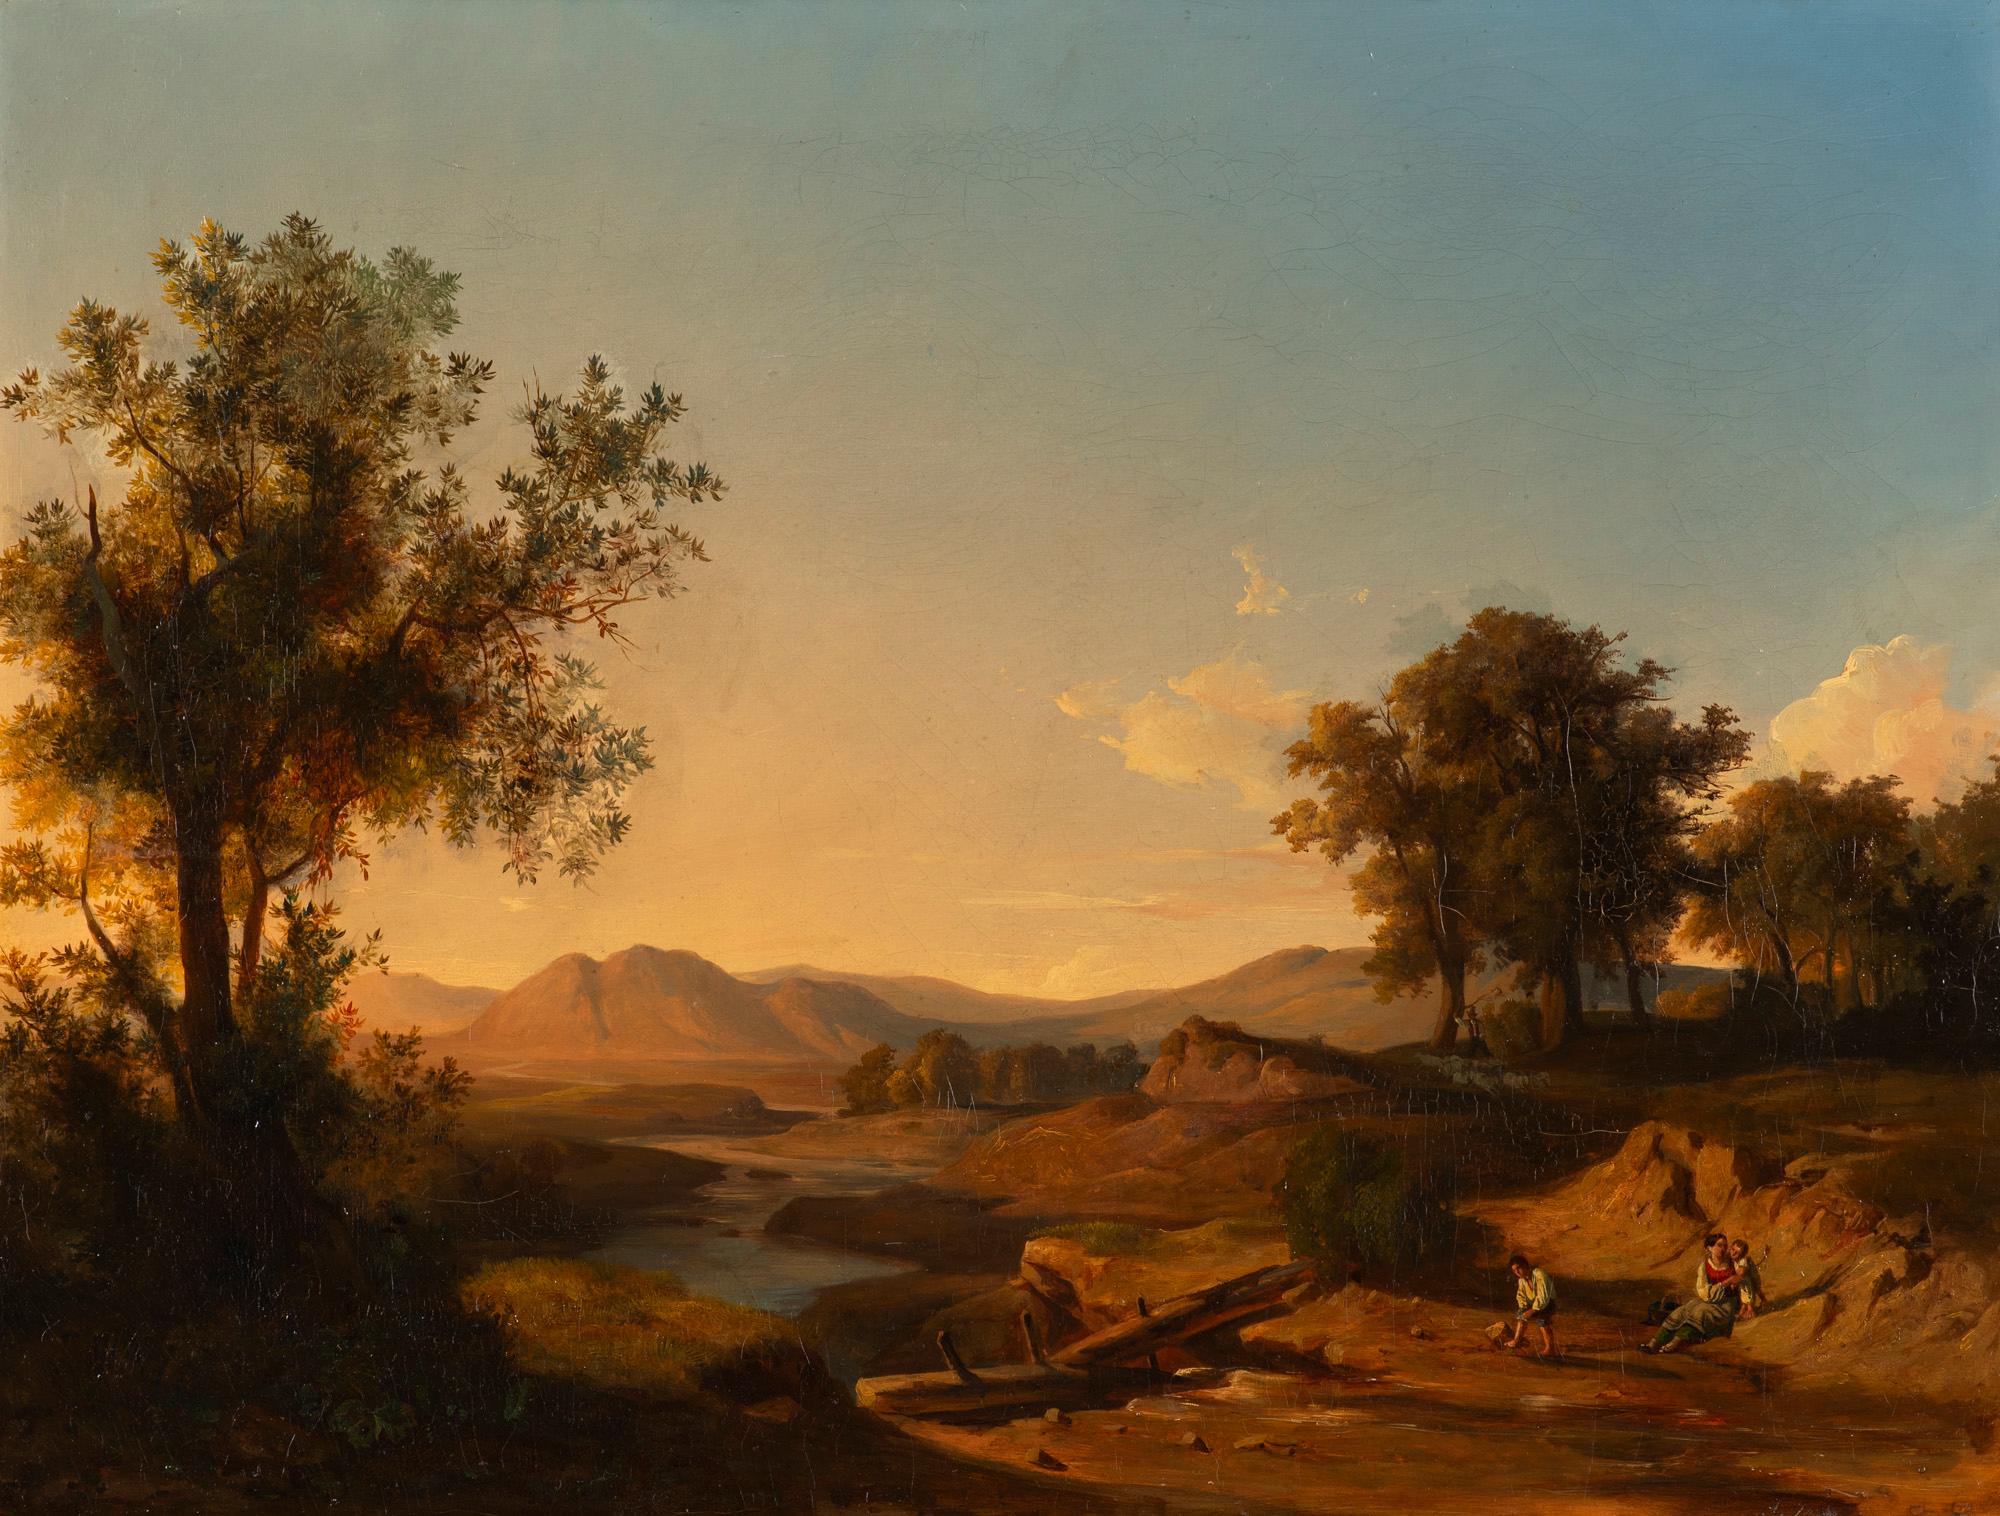 Markó, András (1824-1895): Romantische Landschaft mit Figuren (1852)